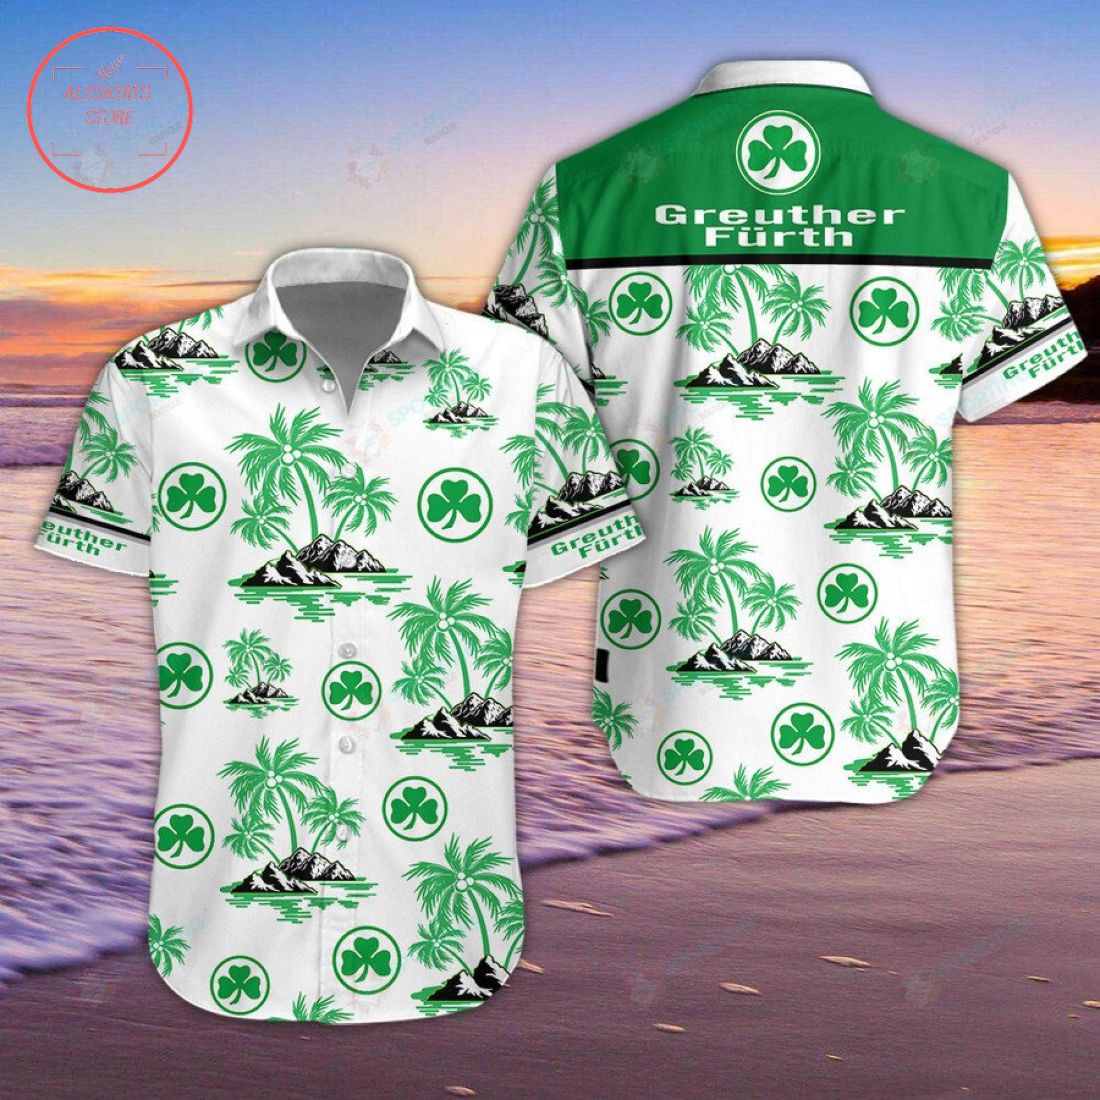 SpVgg Greuther Furth Hawaiian Shirt and Shorts